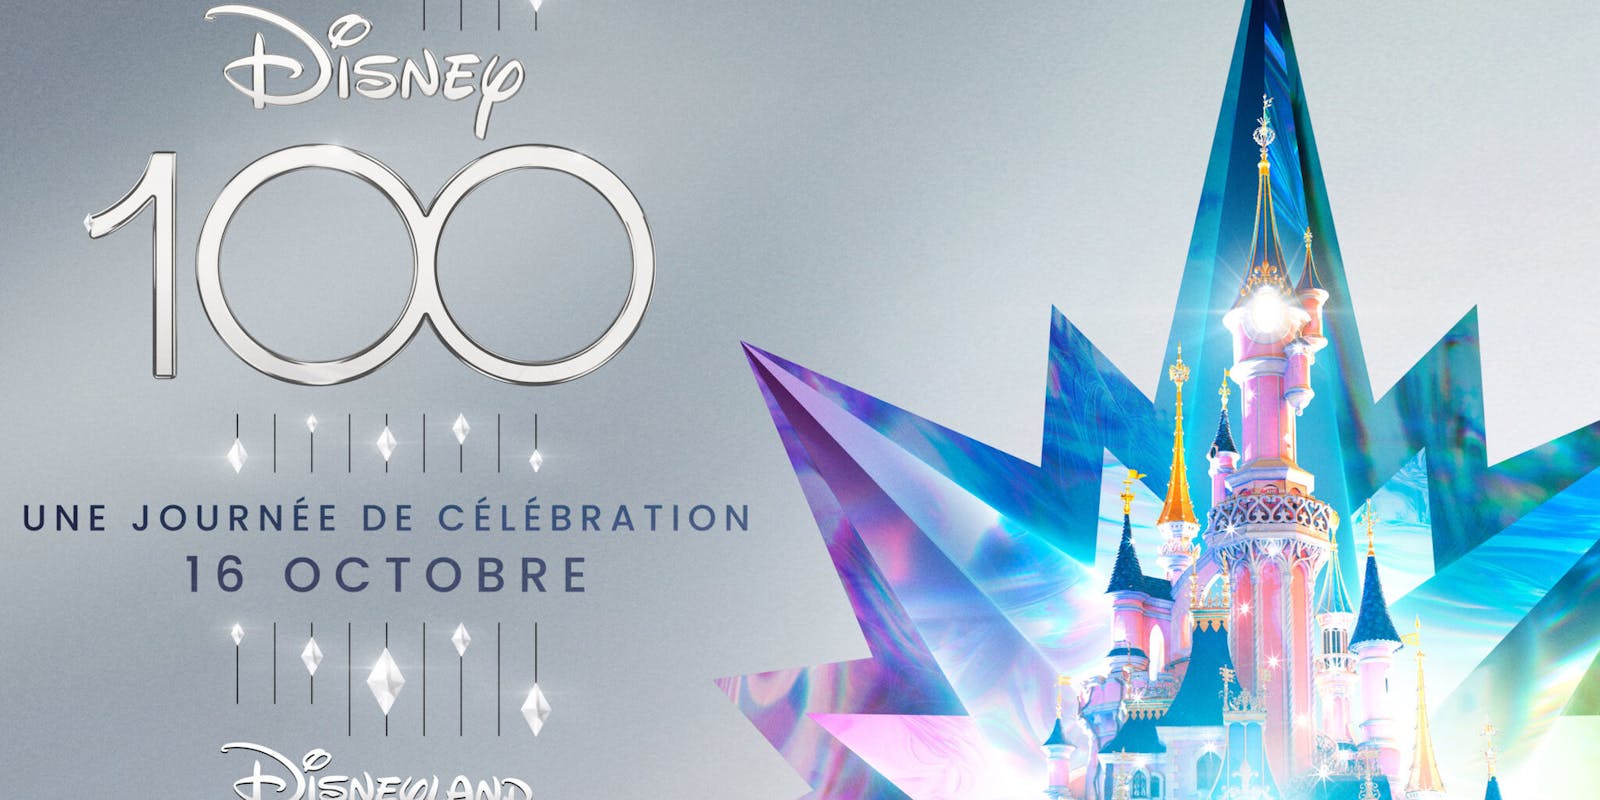 Disneyland Paris célèbre les 100 ans de la Walt Disney Company